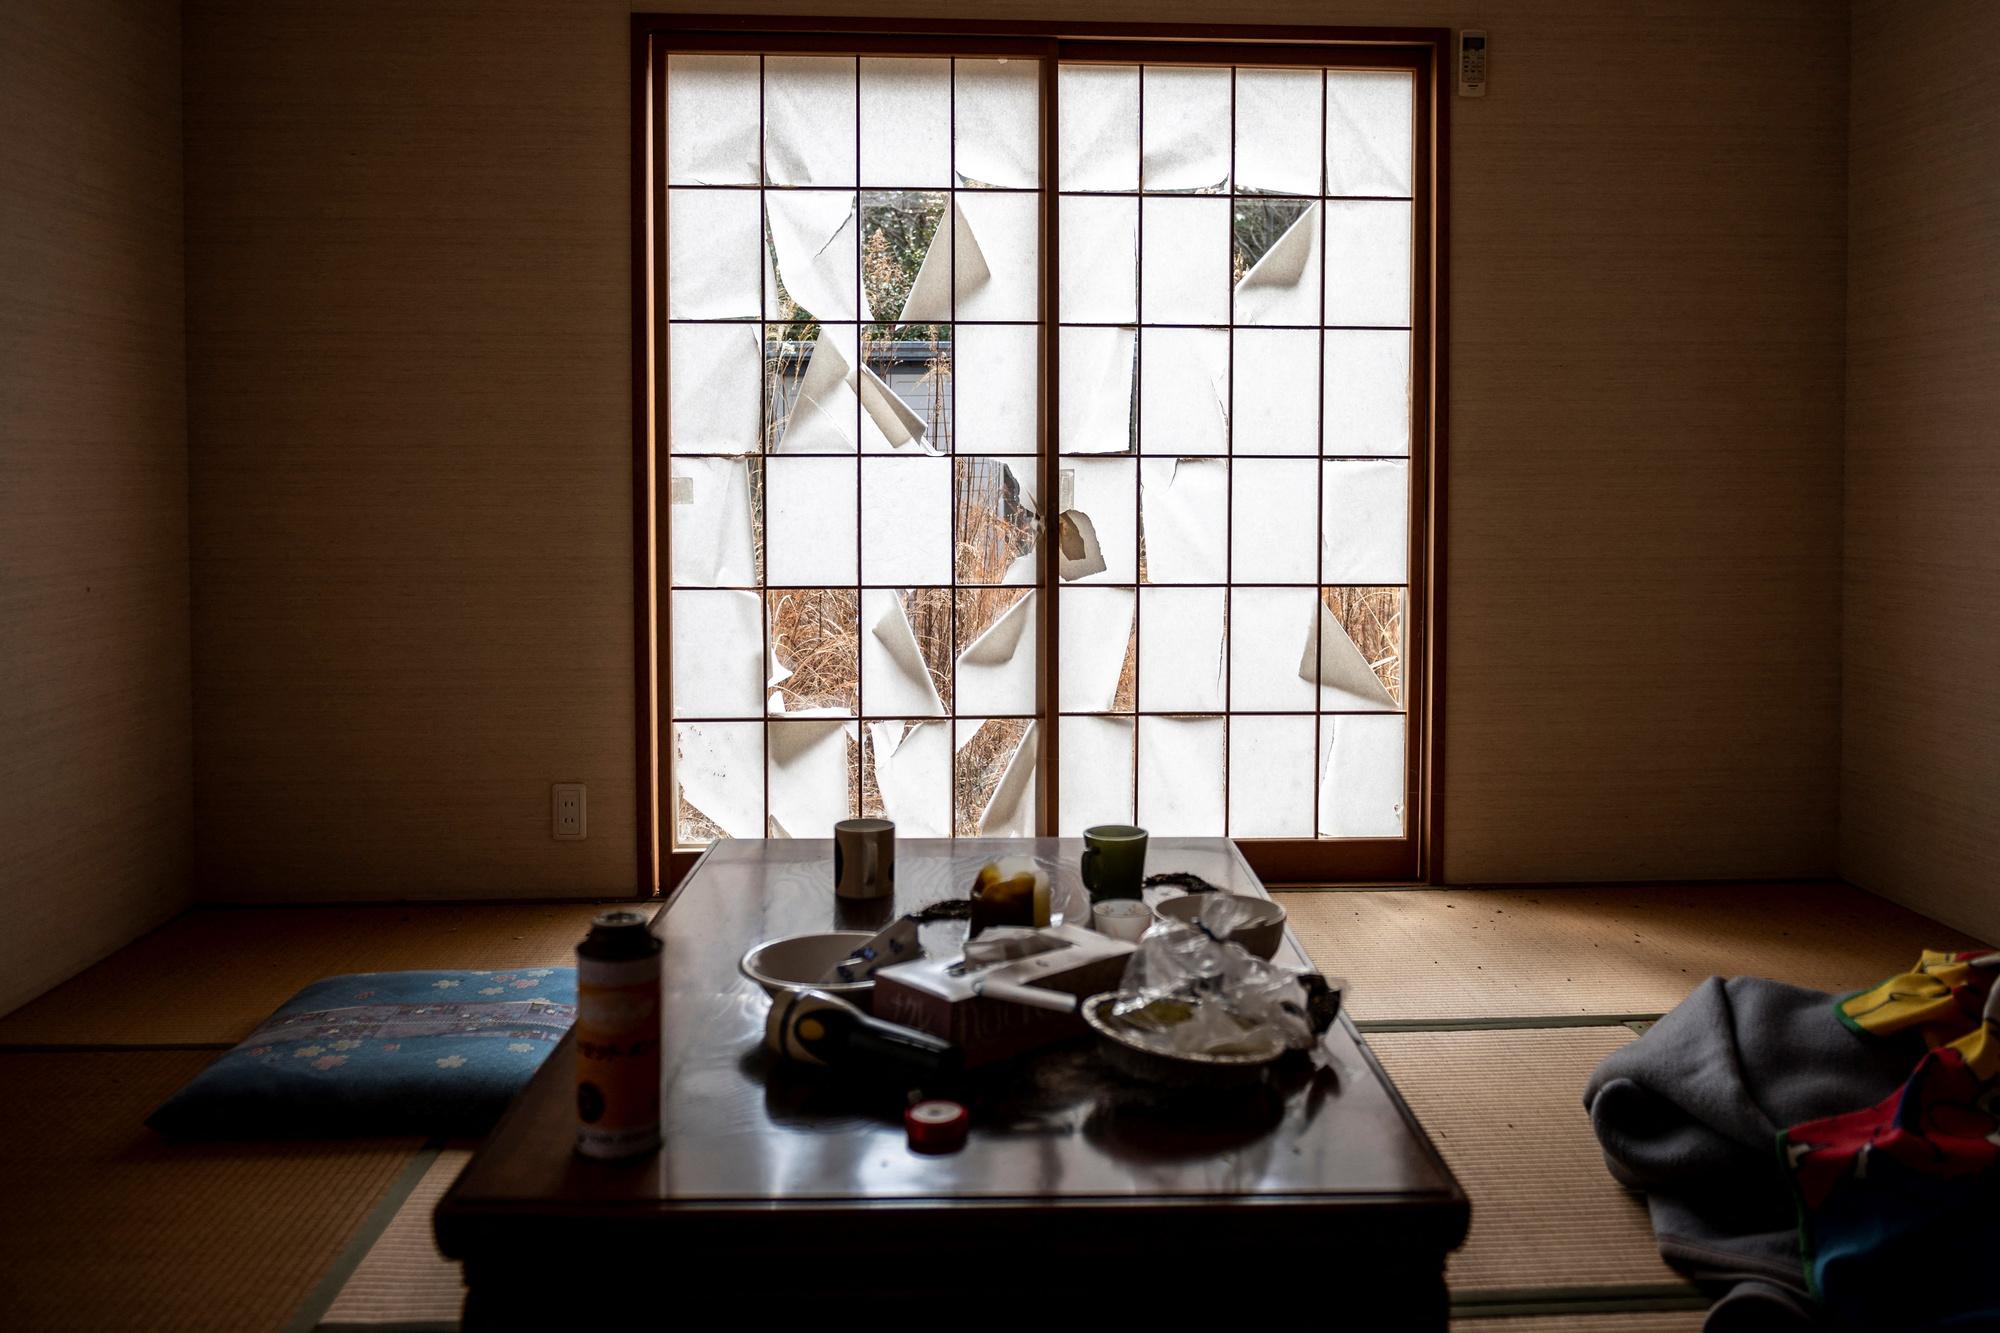 A Fukushima, la difficile renaissance d'anciennes villes fantômes (en images)